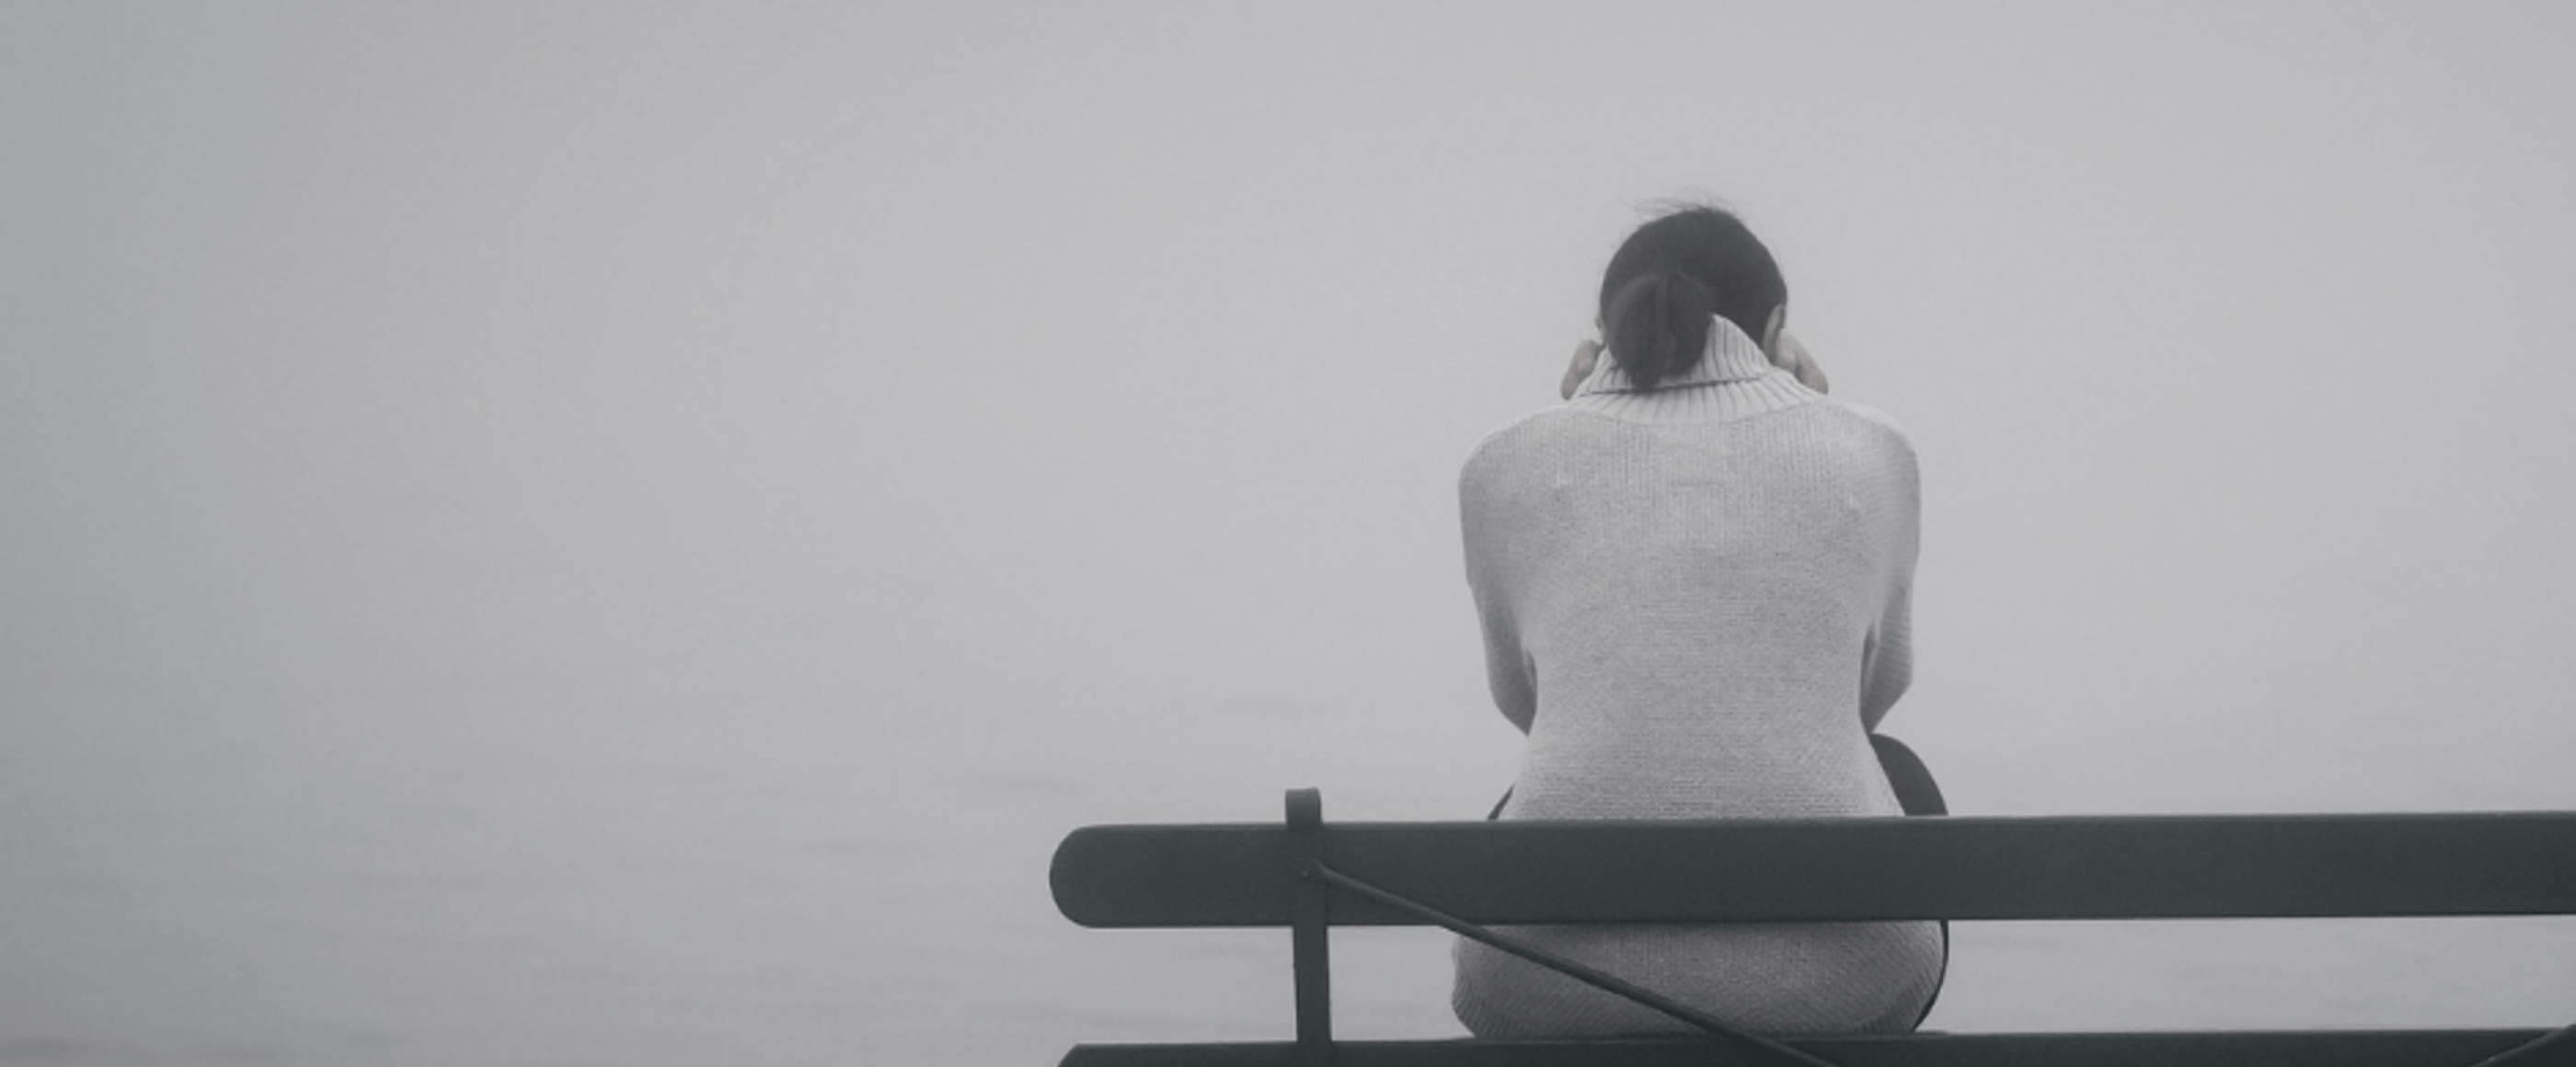 Eine junge Person hockt im Nebel auf einer Bank, alles ist grau.